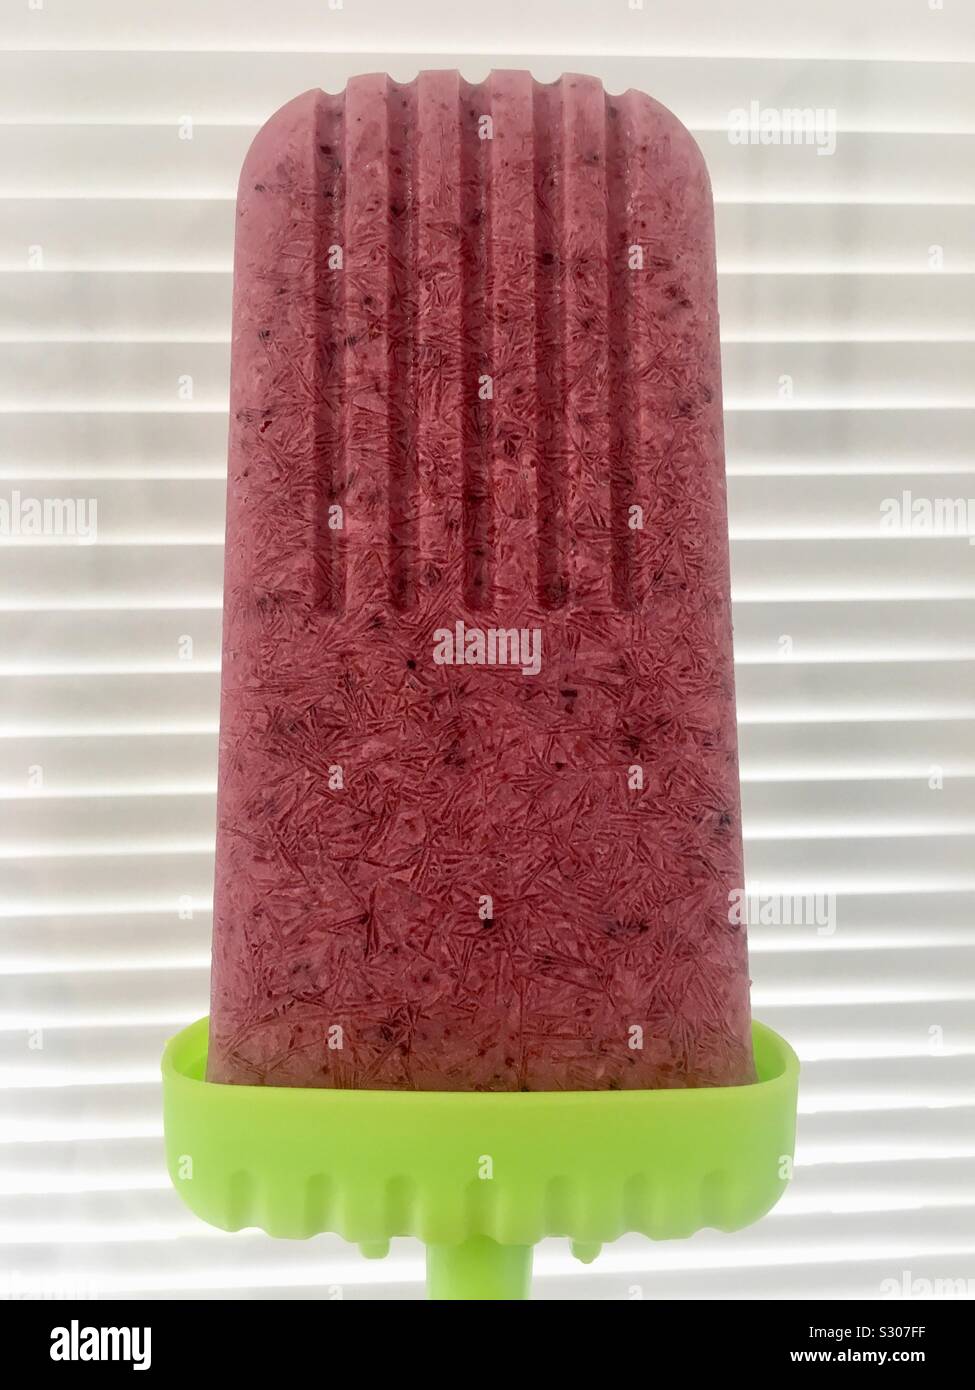 Homemade Frozen Fruit Popsicle Stock Photo